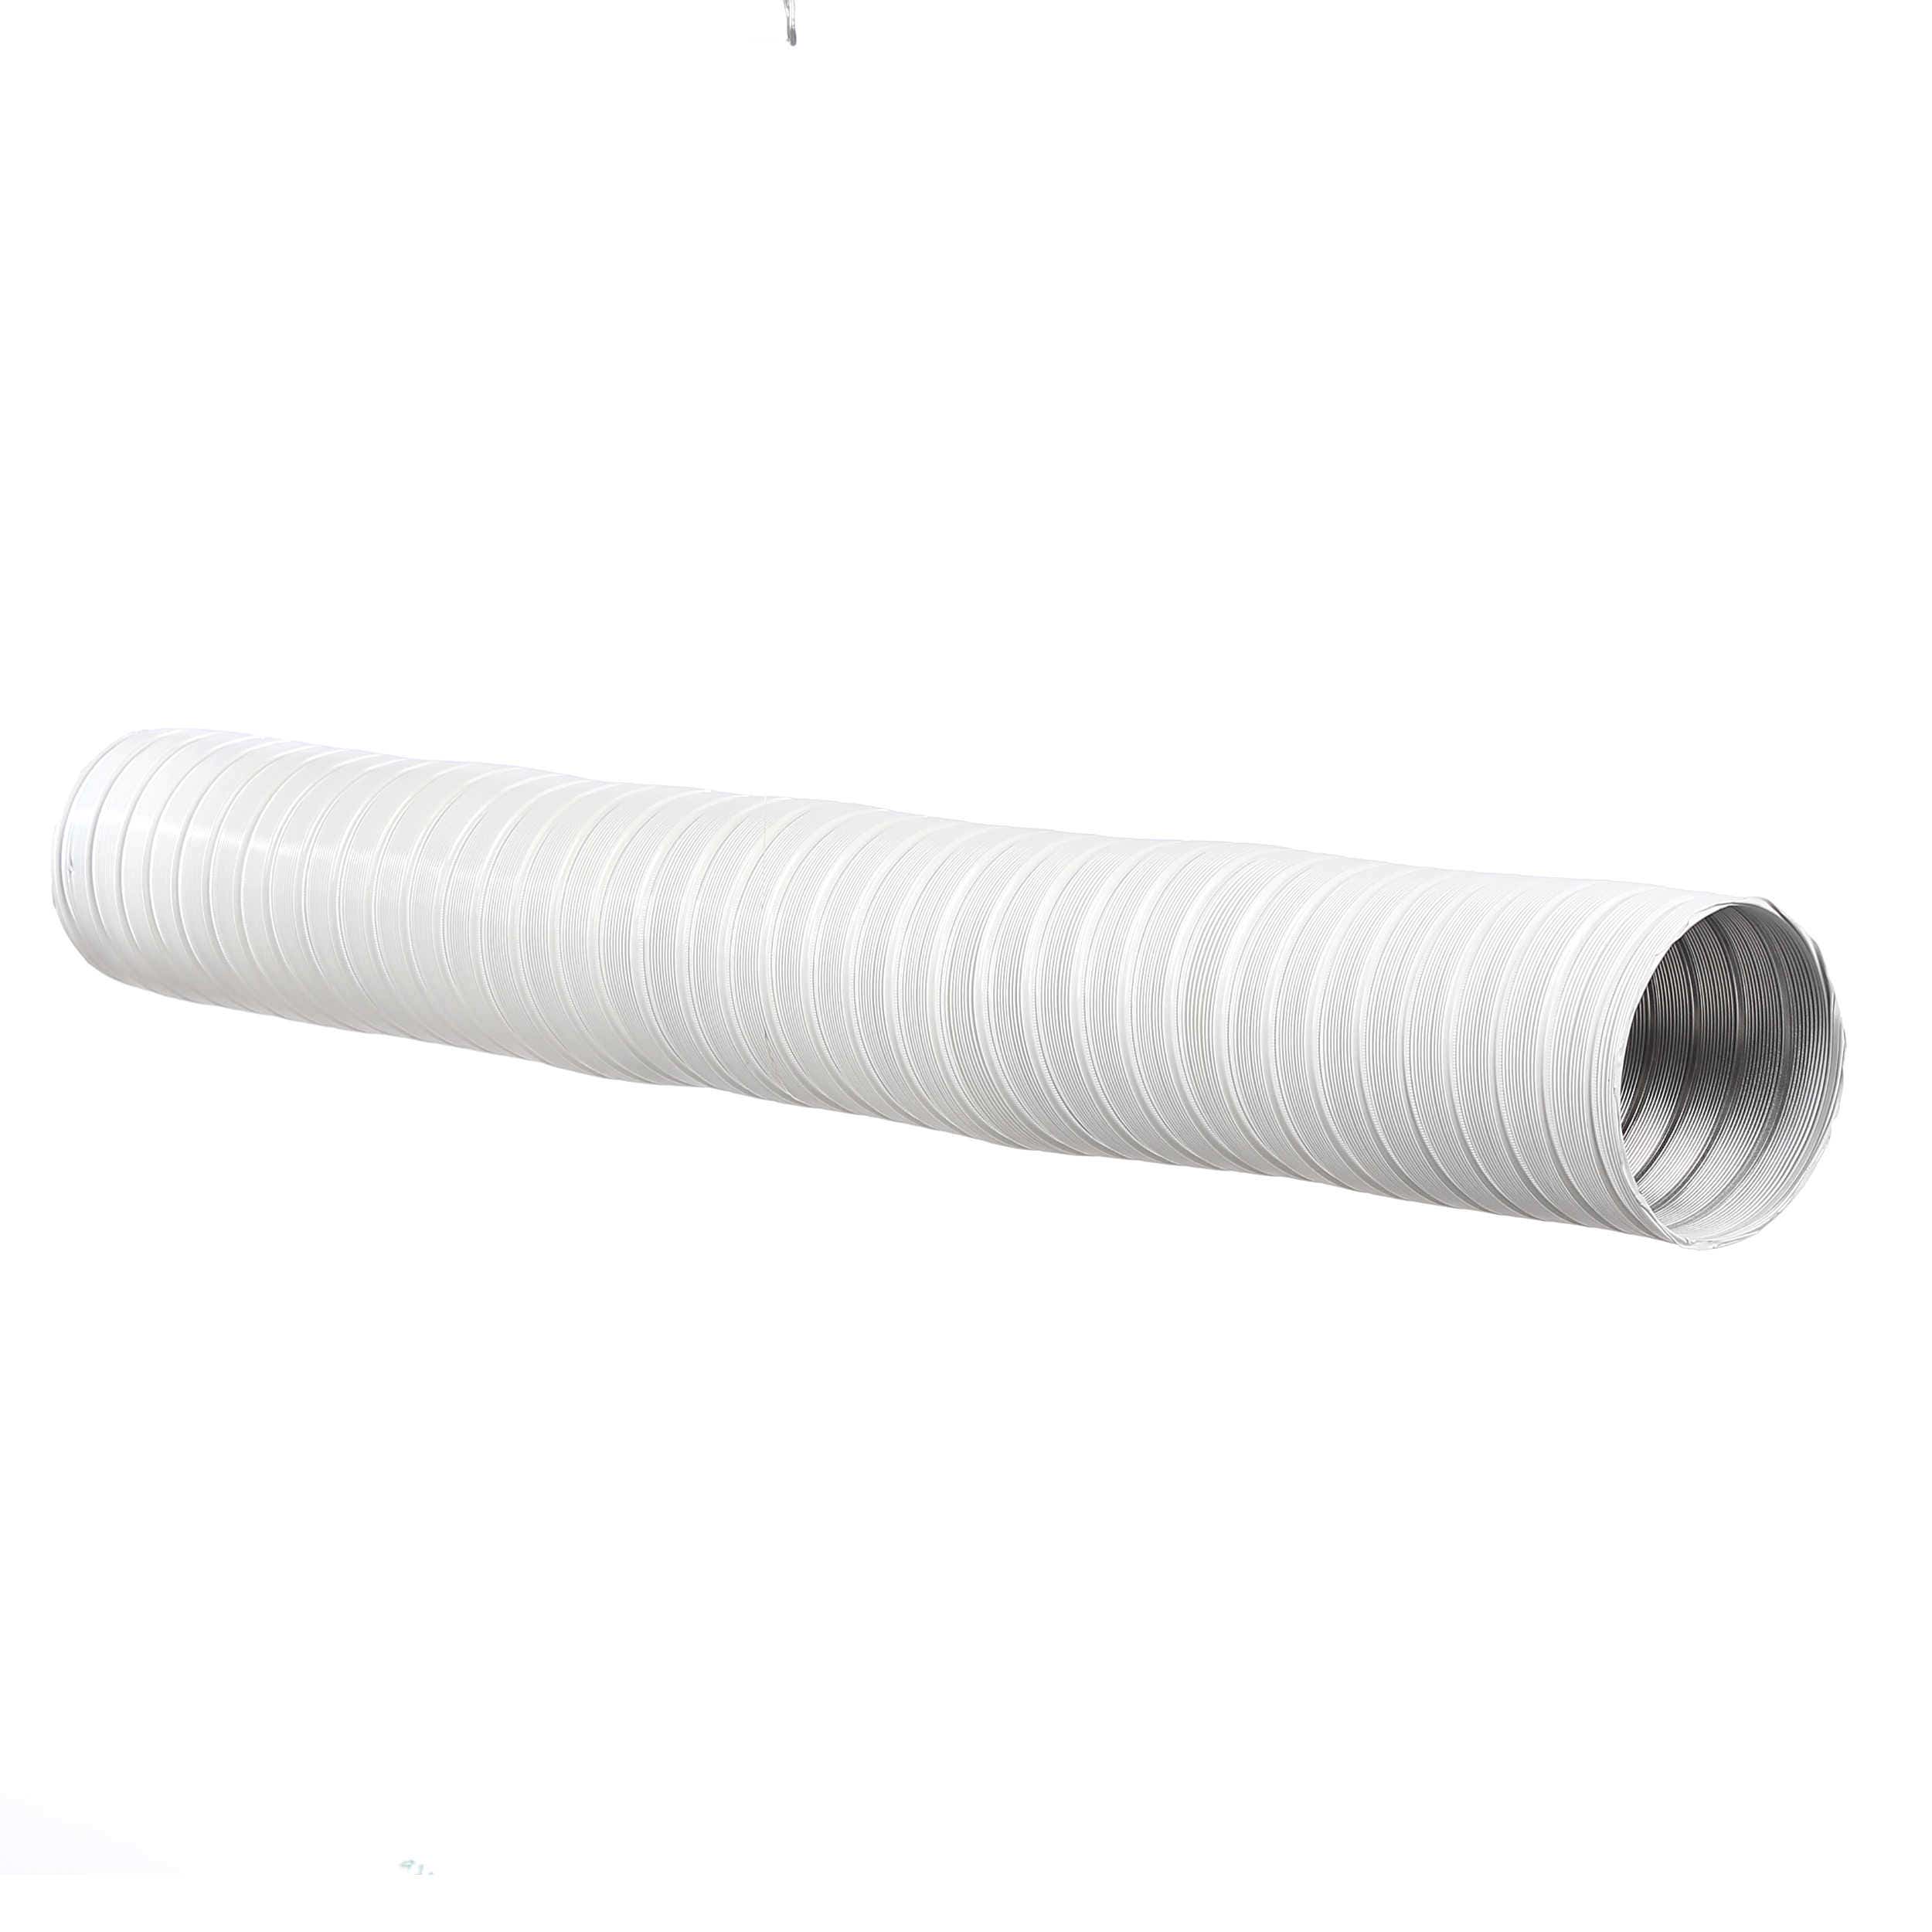 Secret Encyclopedia Confuse Dedeman - Tub flexibil pentru sisteme de incalzire si ventilare, aluminiu,  alb 9010, D 120 mm - Dedicat planurilor tale